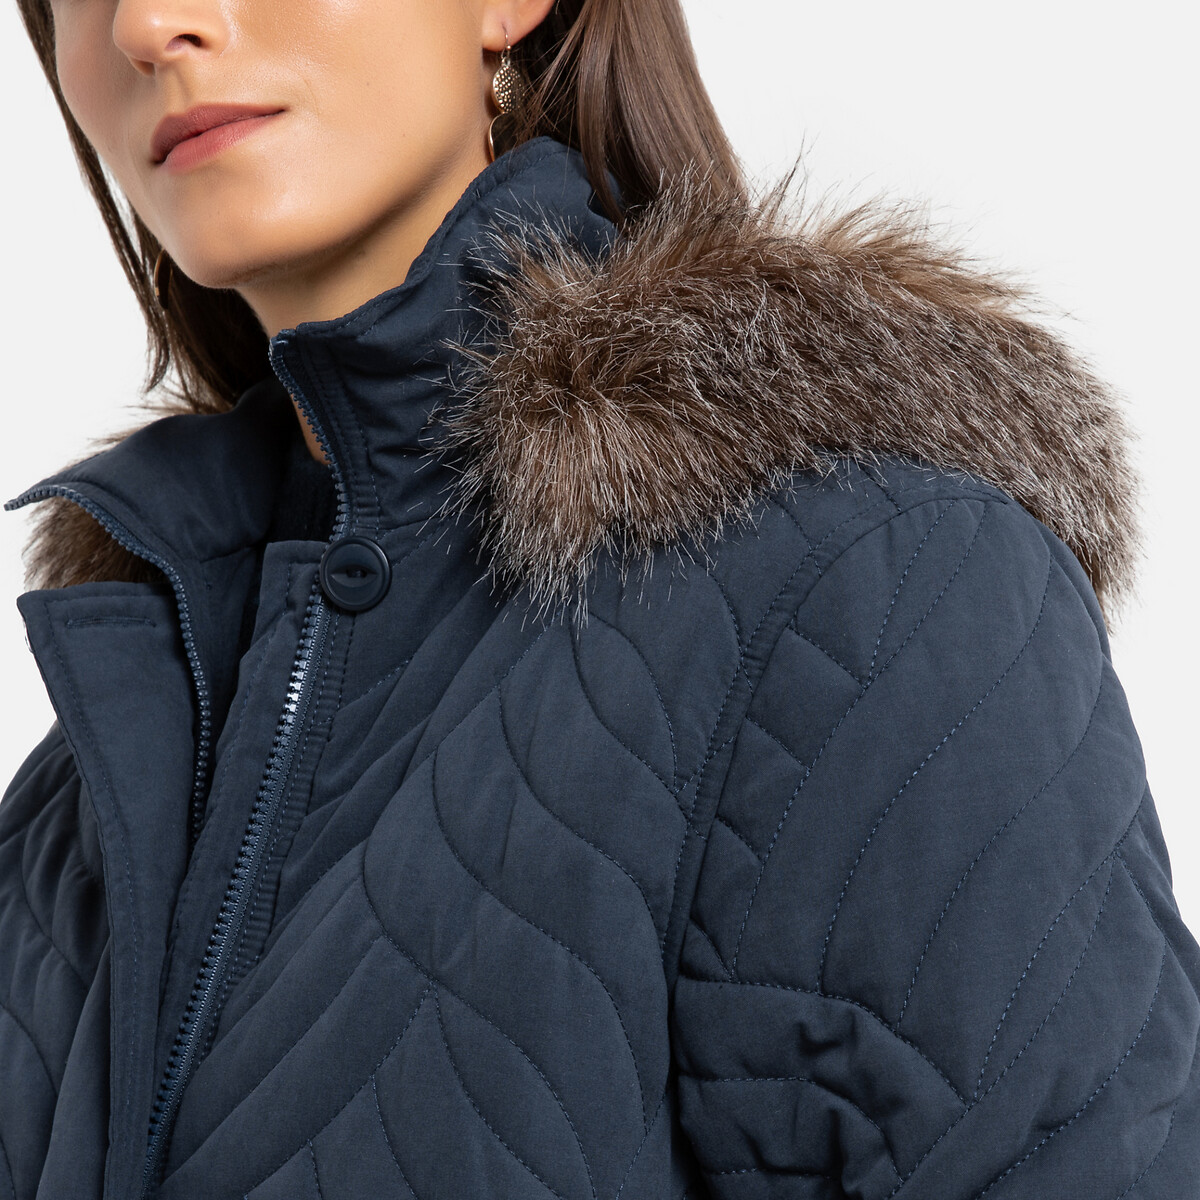 Куртка La Redoute Стеганая средней длины с капюшоном зимняя модель 48 (FR) - 54 (RUS) синий, размер 48 (FR) - 54 (RUS) Стеганая средней длины с капюшоном зимняя модель 48 (FR) - 54 (RUS) синий - фото 3